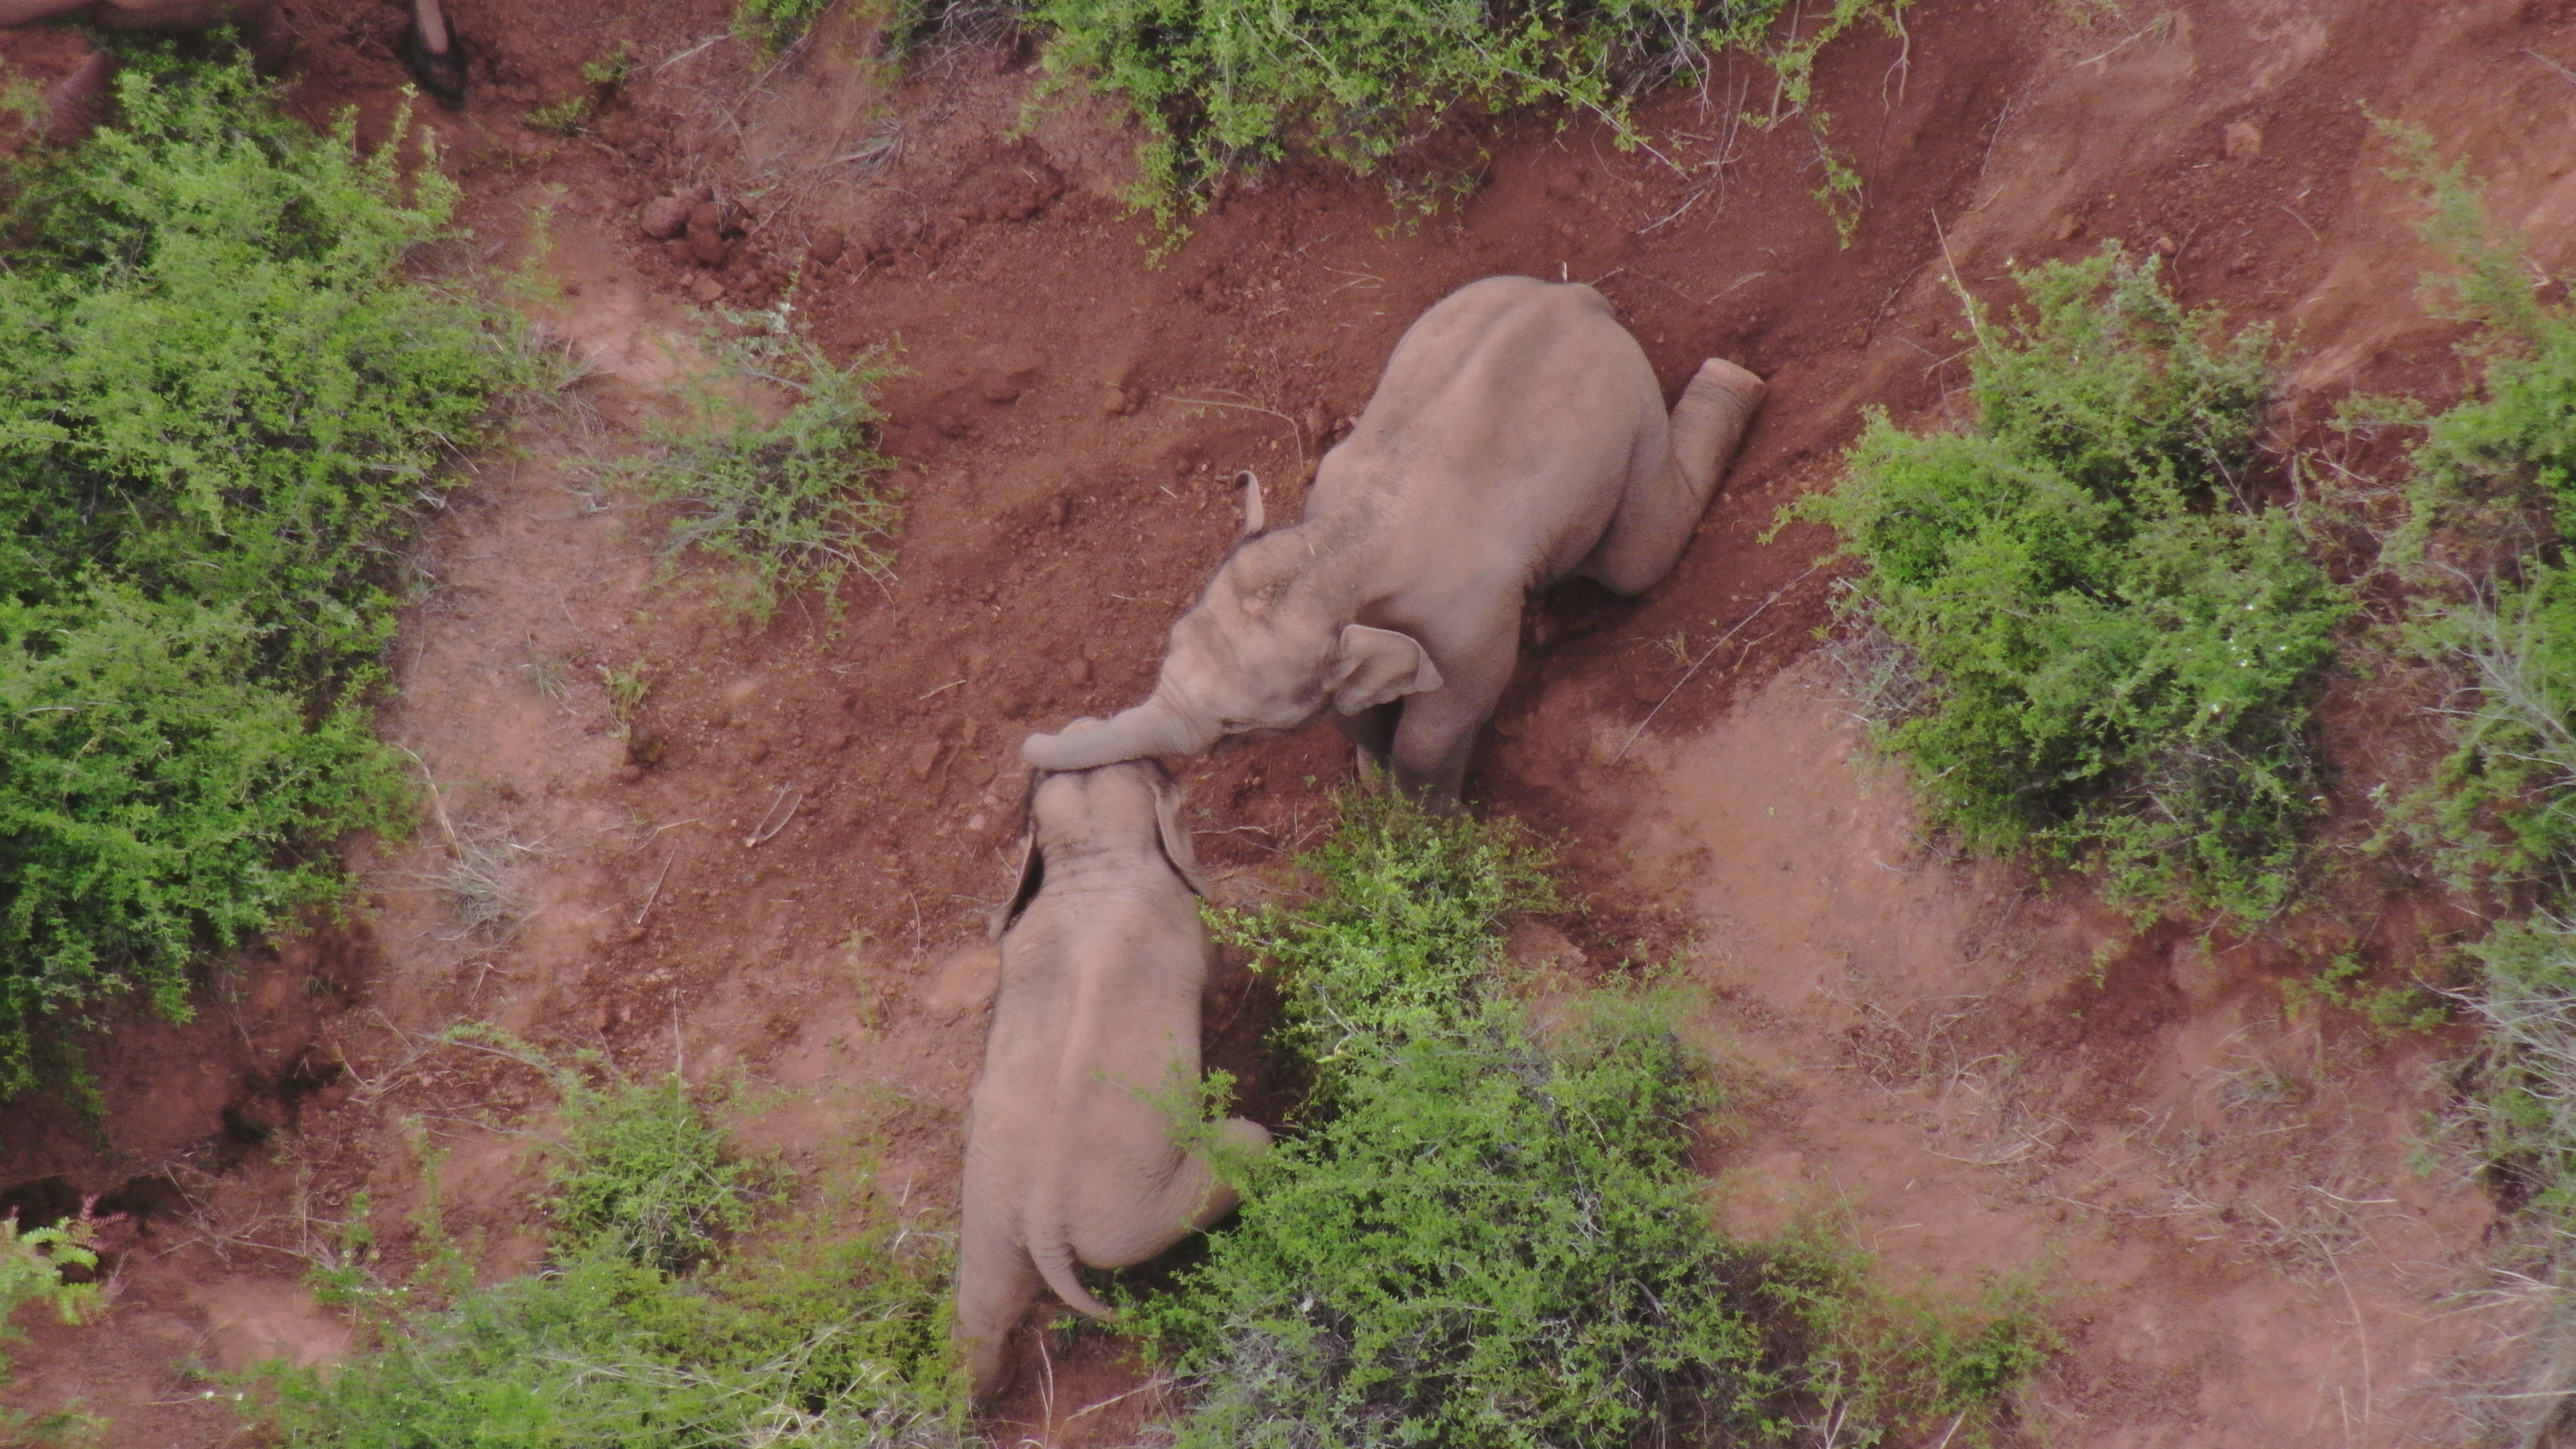 野生动物公众责任险承保公司受理亚洲象肇事